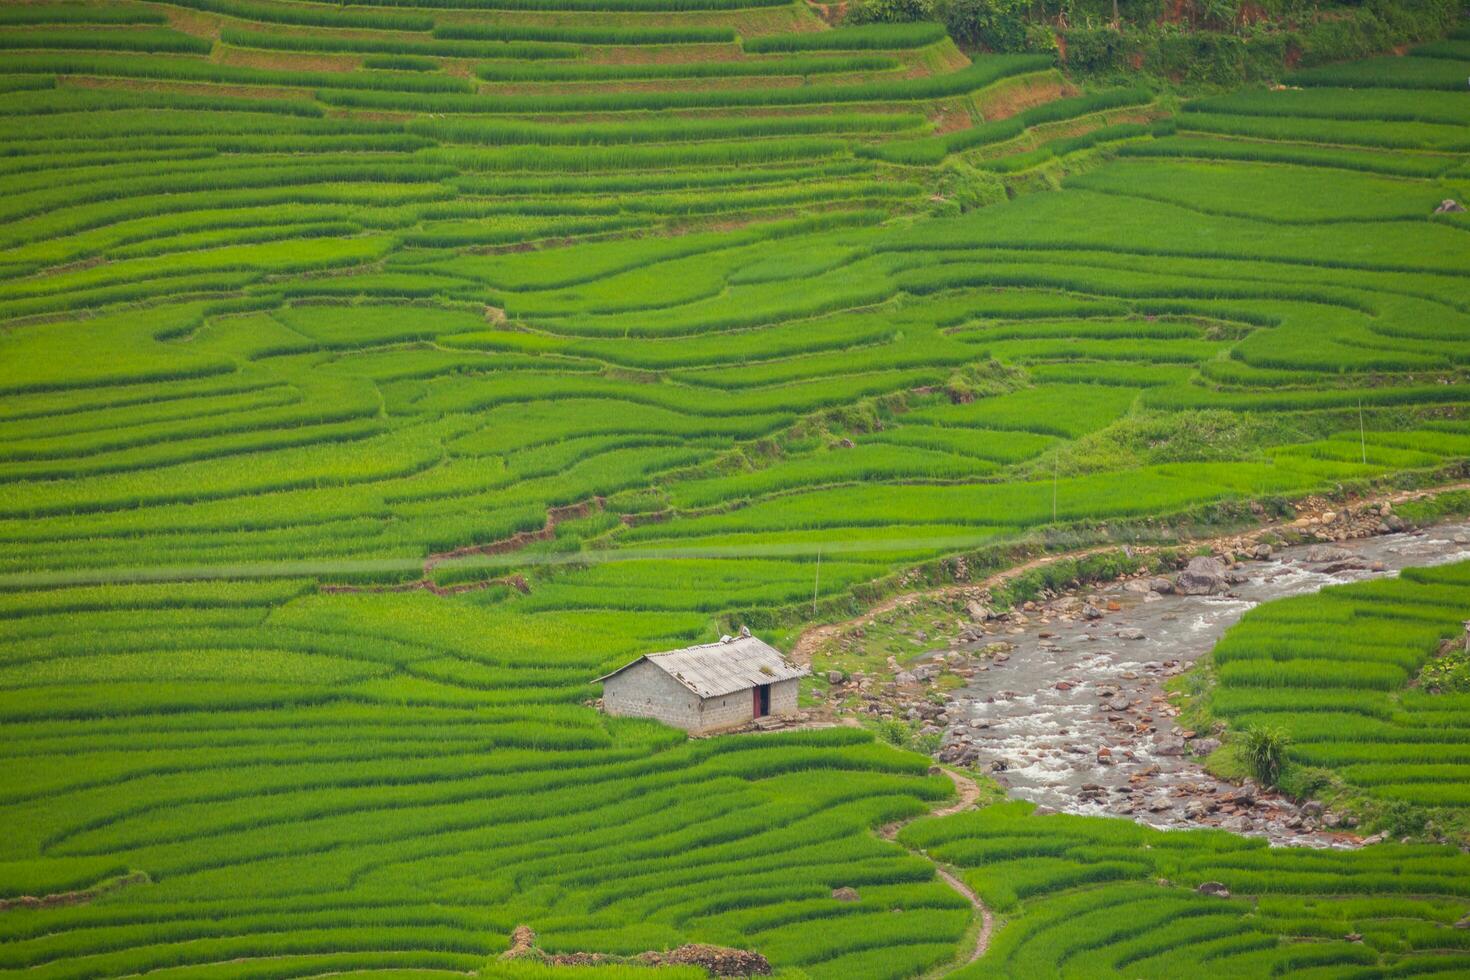 vert de riz terrasse sur colline de Montagne photo